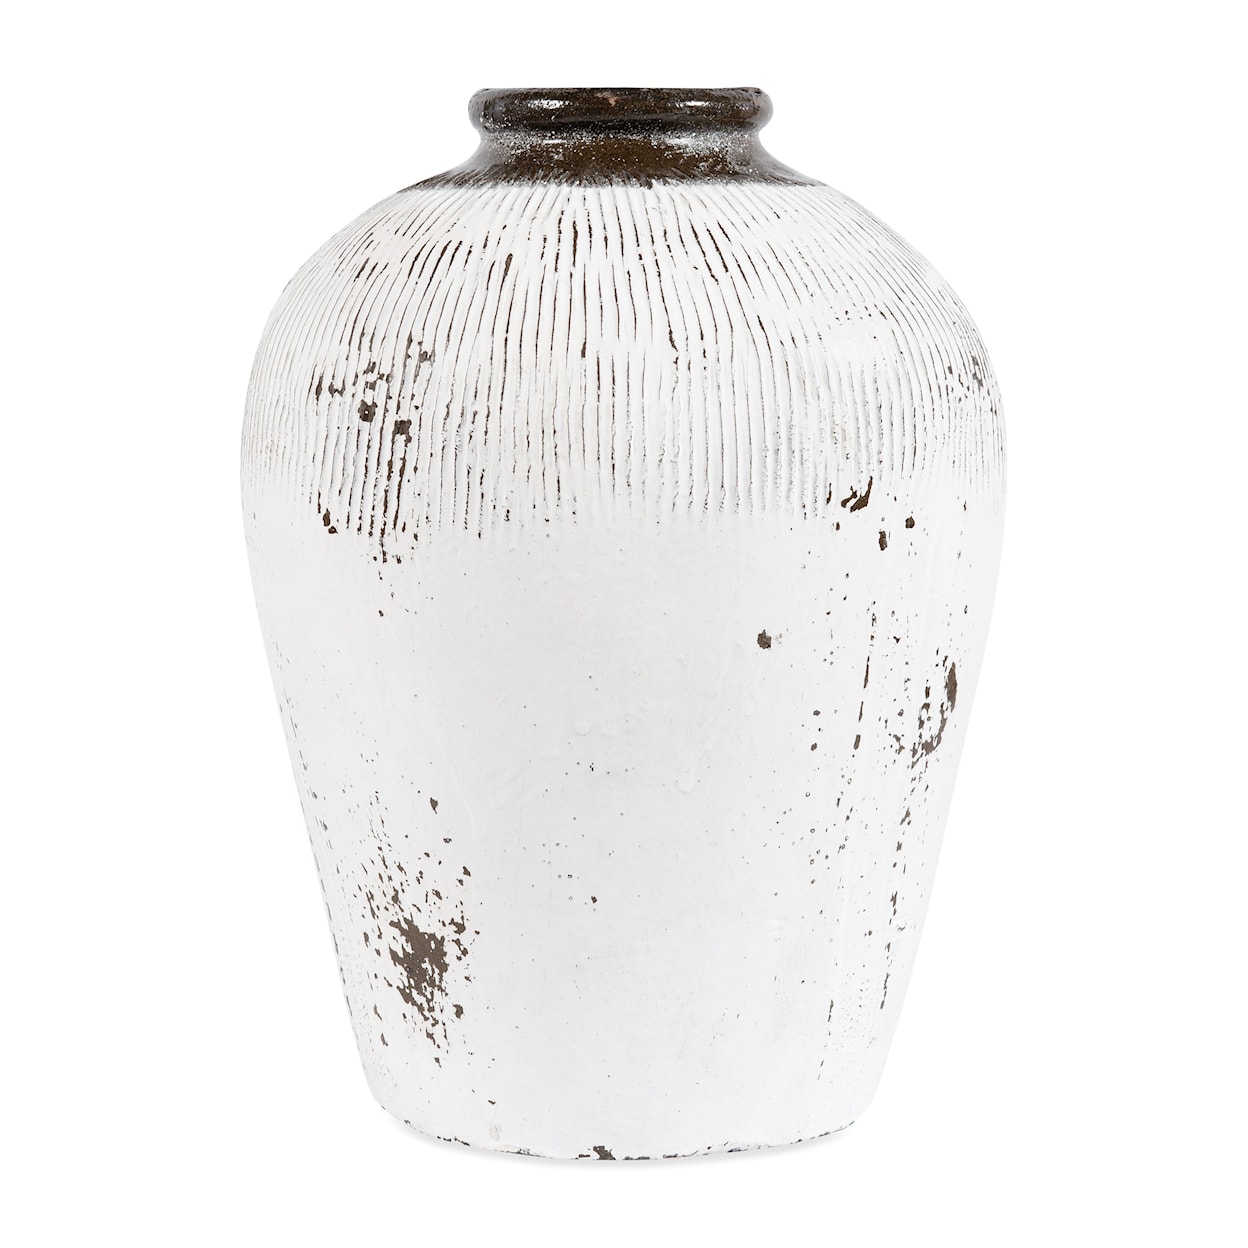 BOBO Intriguing Objects BOBO Intriguing Objects Antique Rice Wine Jar - Medium